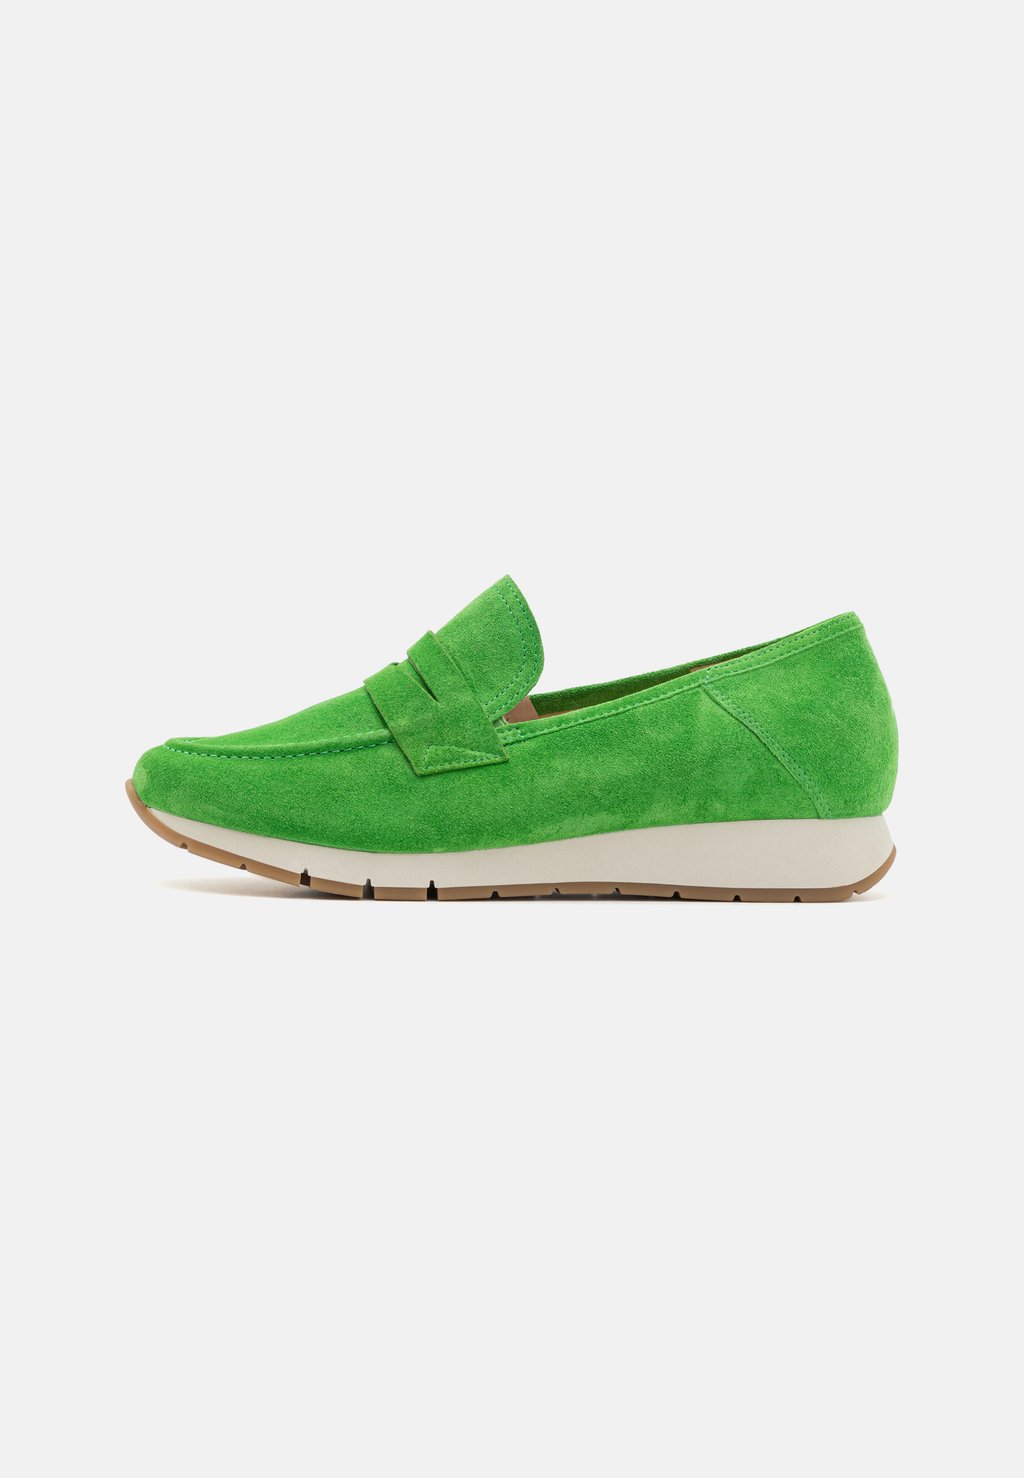 Ботинки Gabor Comfort, зеленый